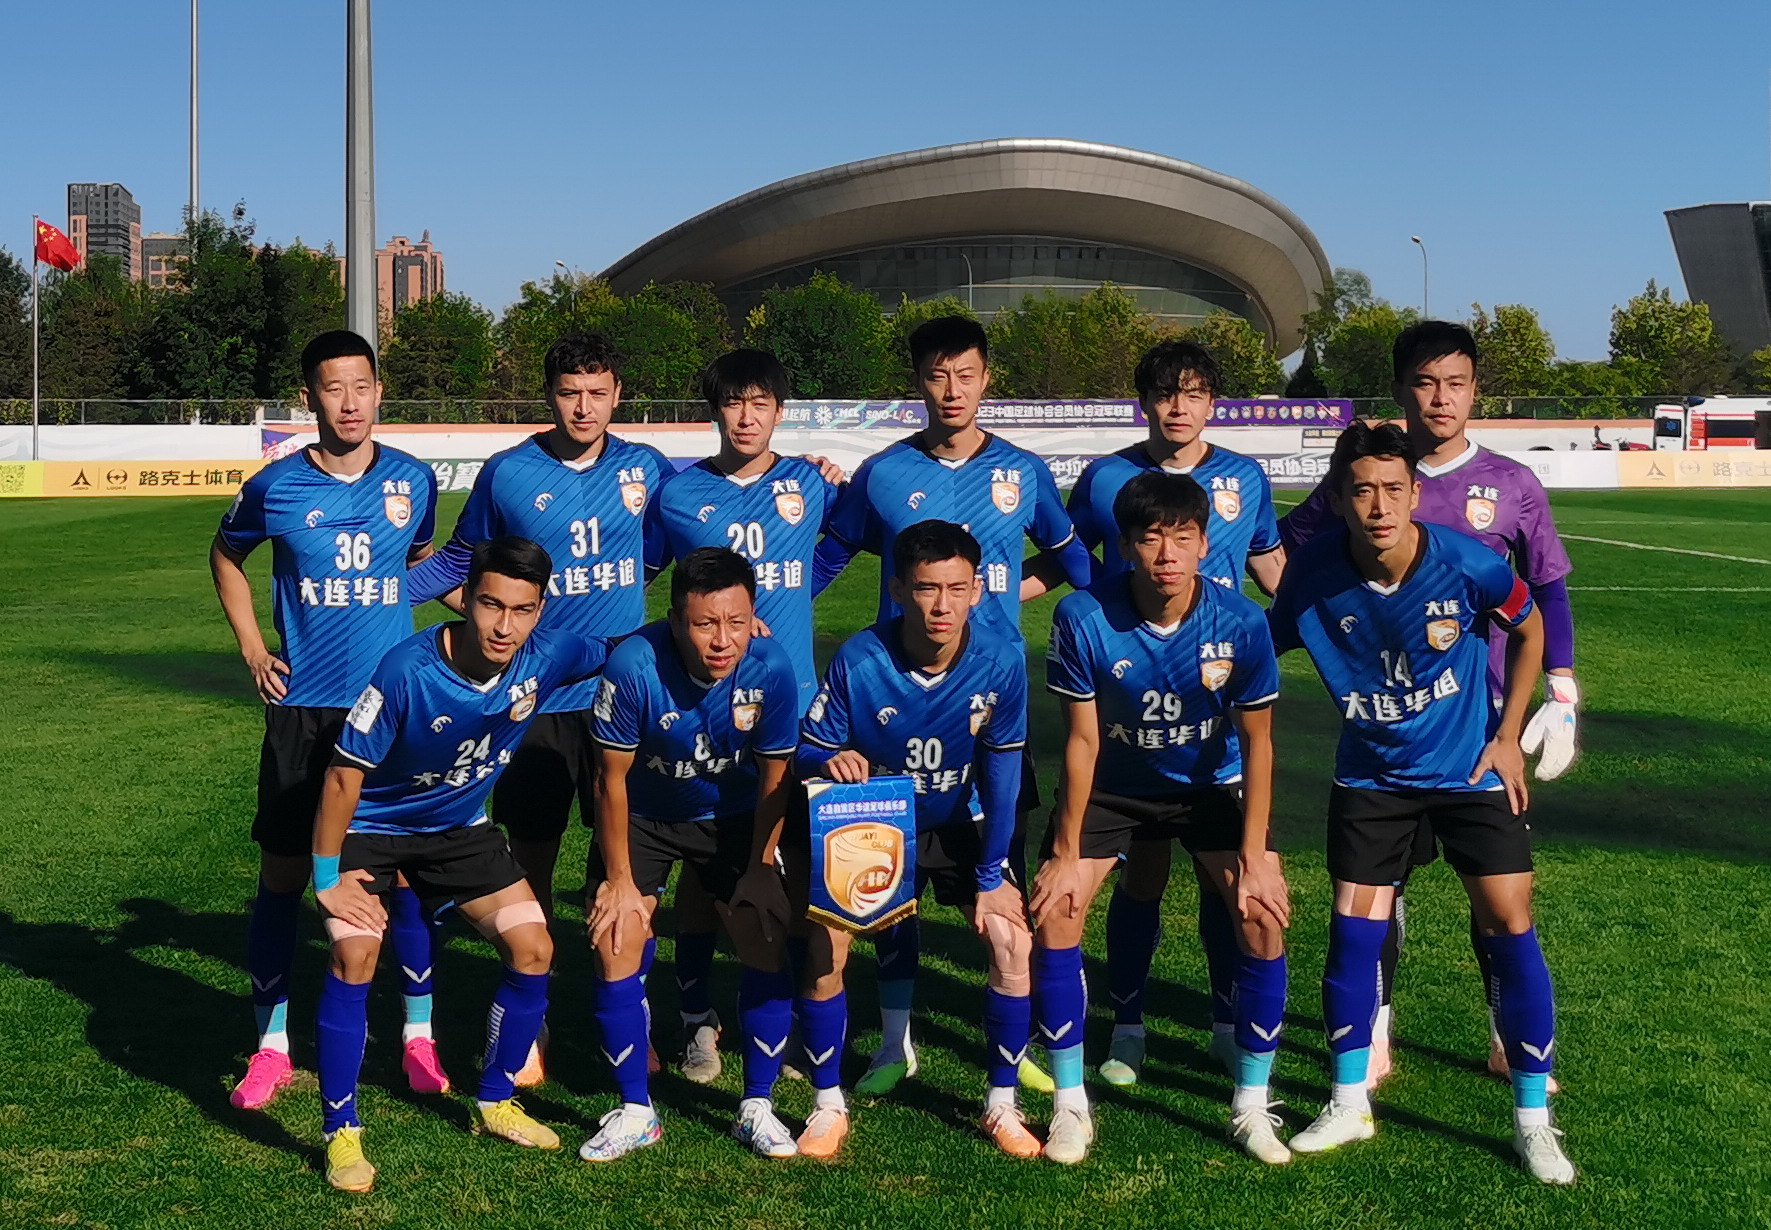 大连华谊足球俱乐部和一线队领队是出自著名的大连毅腾青训体系的